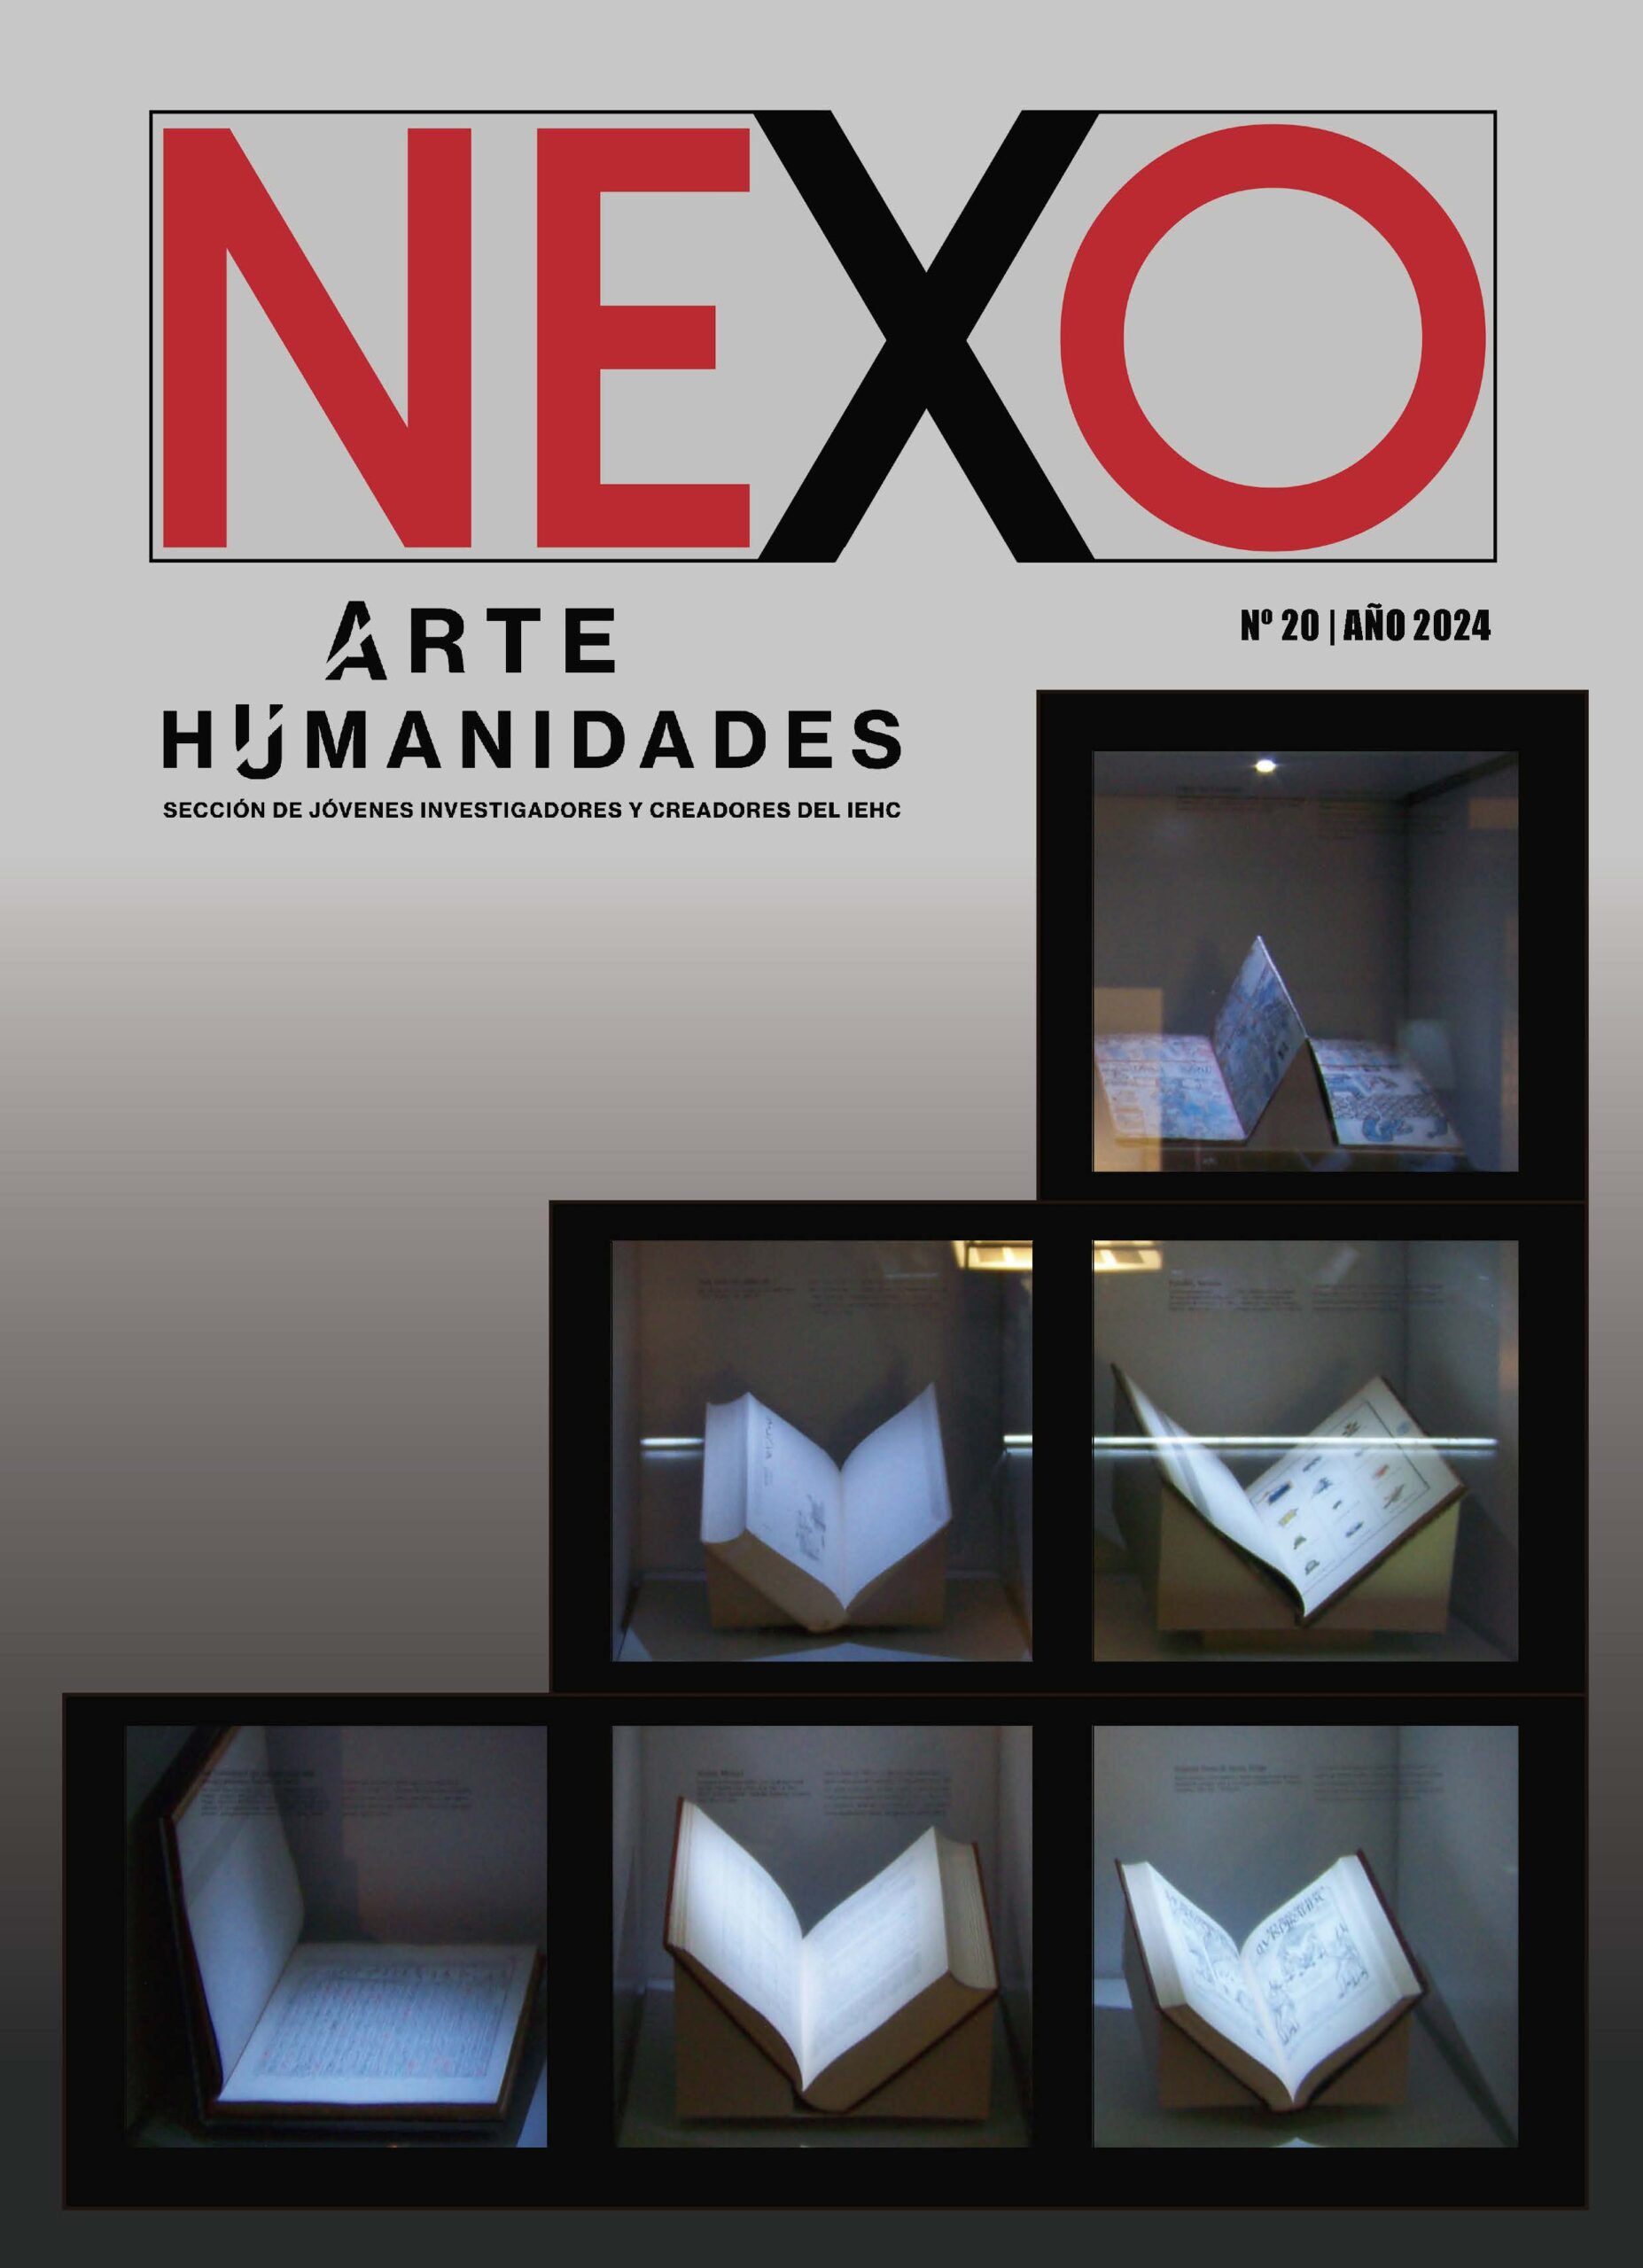 Portada de la revista con el título NEXO, debajo ARTE HUMANIDADES sección de jóvenes investigadores de Instituto de Estudios Hispánicos de Canariasy el número 20 año 2024